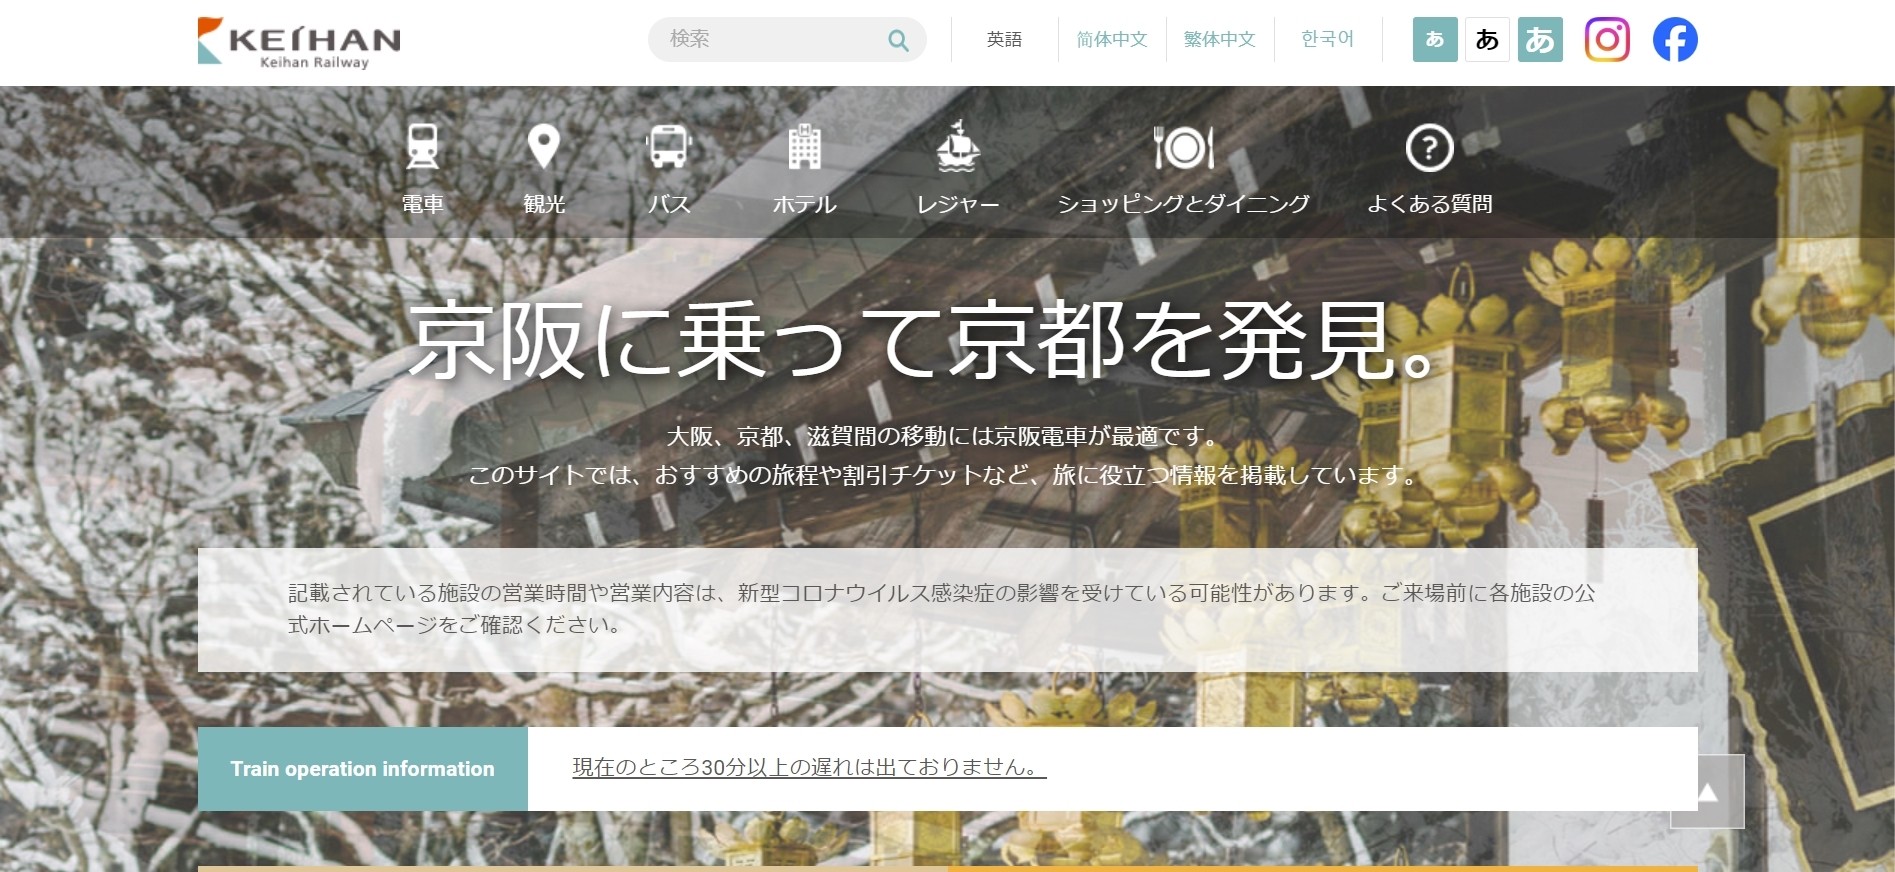 多言語サイト事例　京阪電鉄外国語サイト